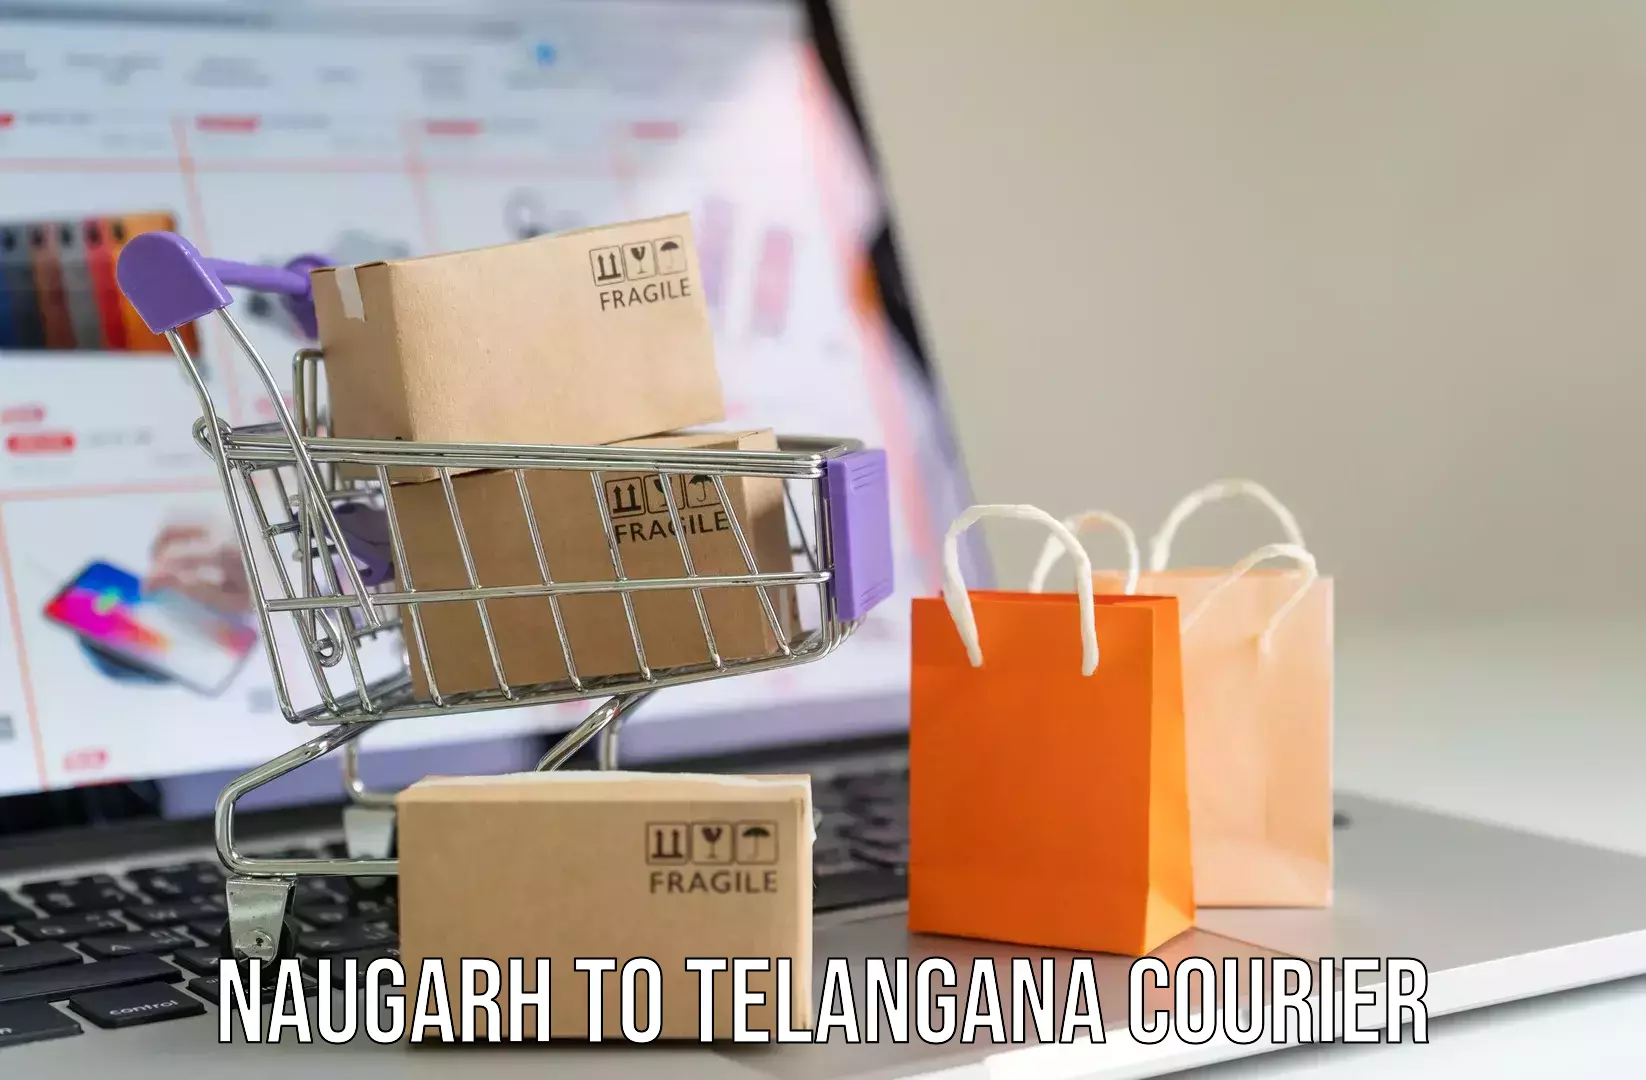 Luggage transfer service Naugarh to Rudrangi